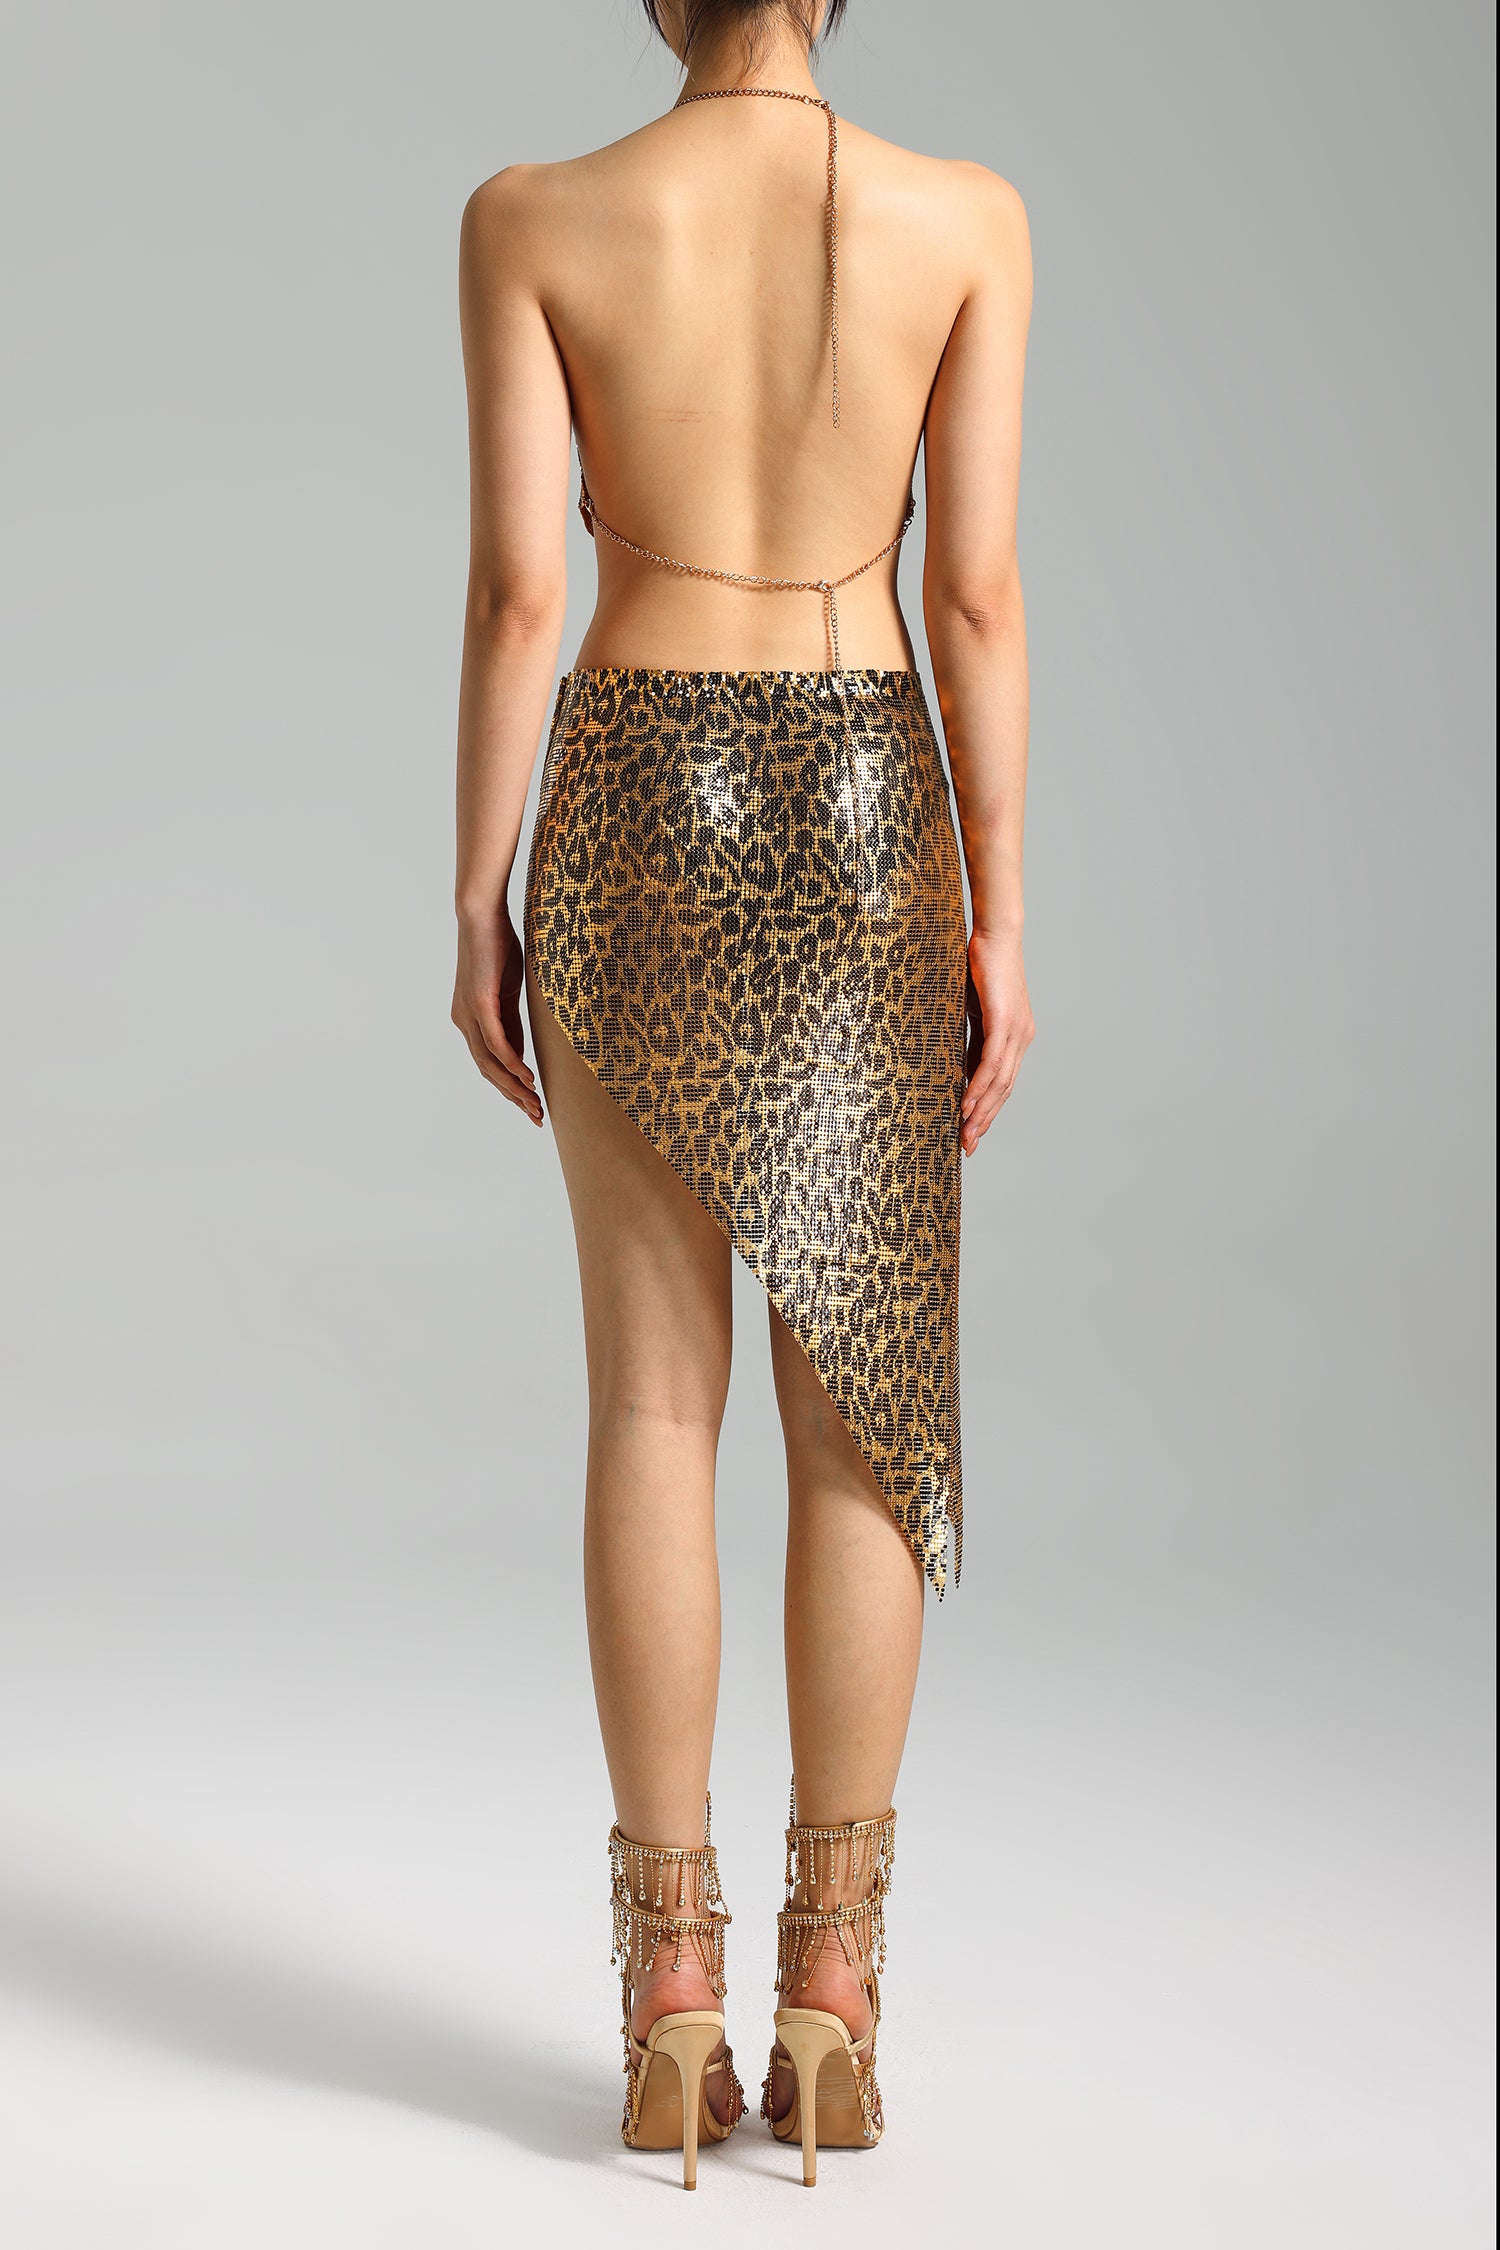 Mauris Leopard Metal Halter Skirt Set